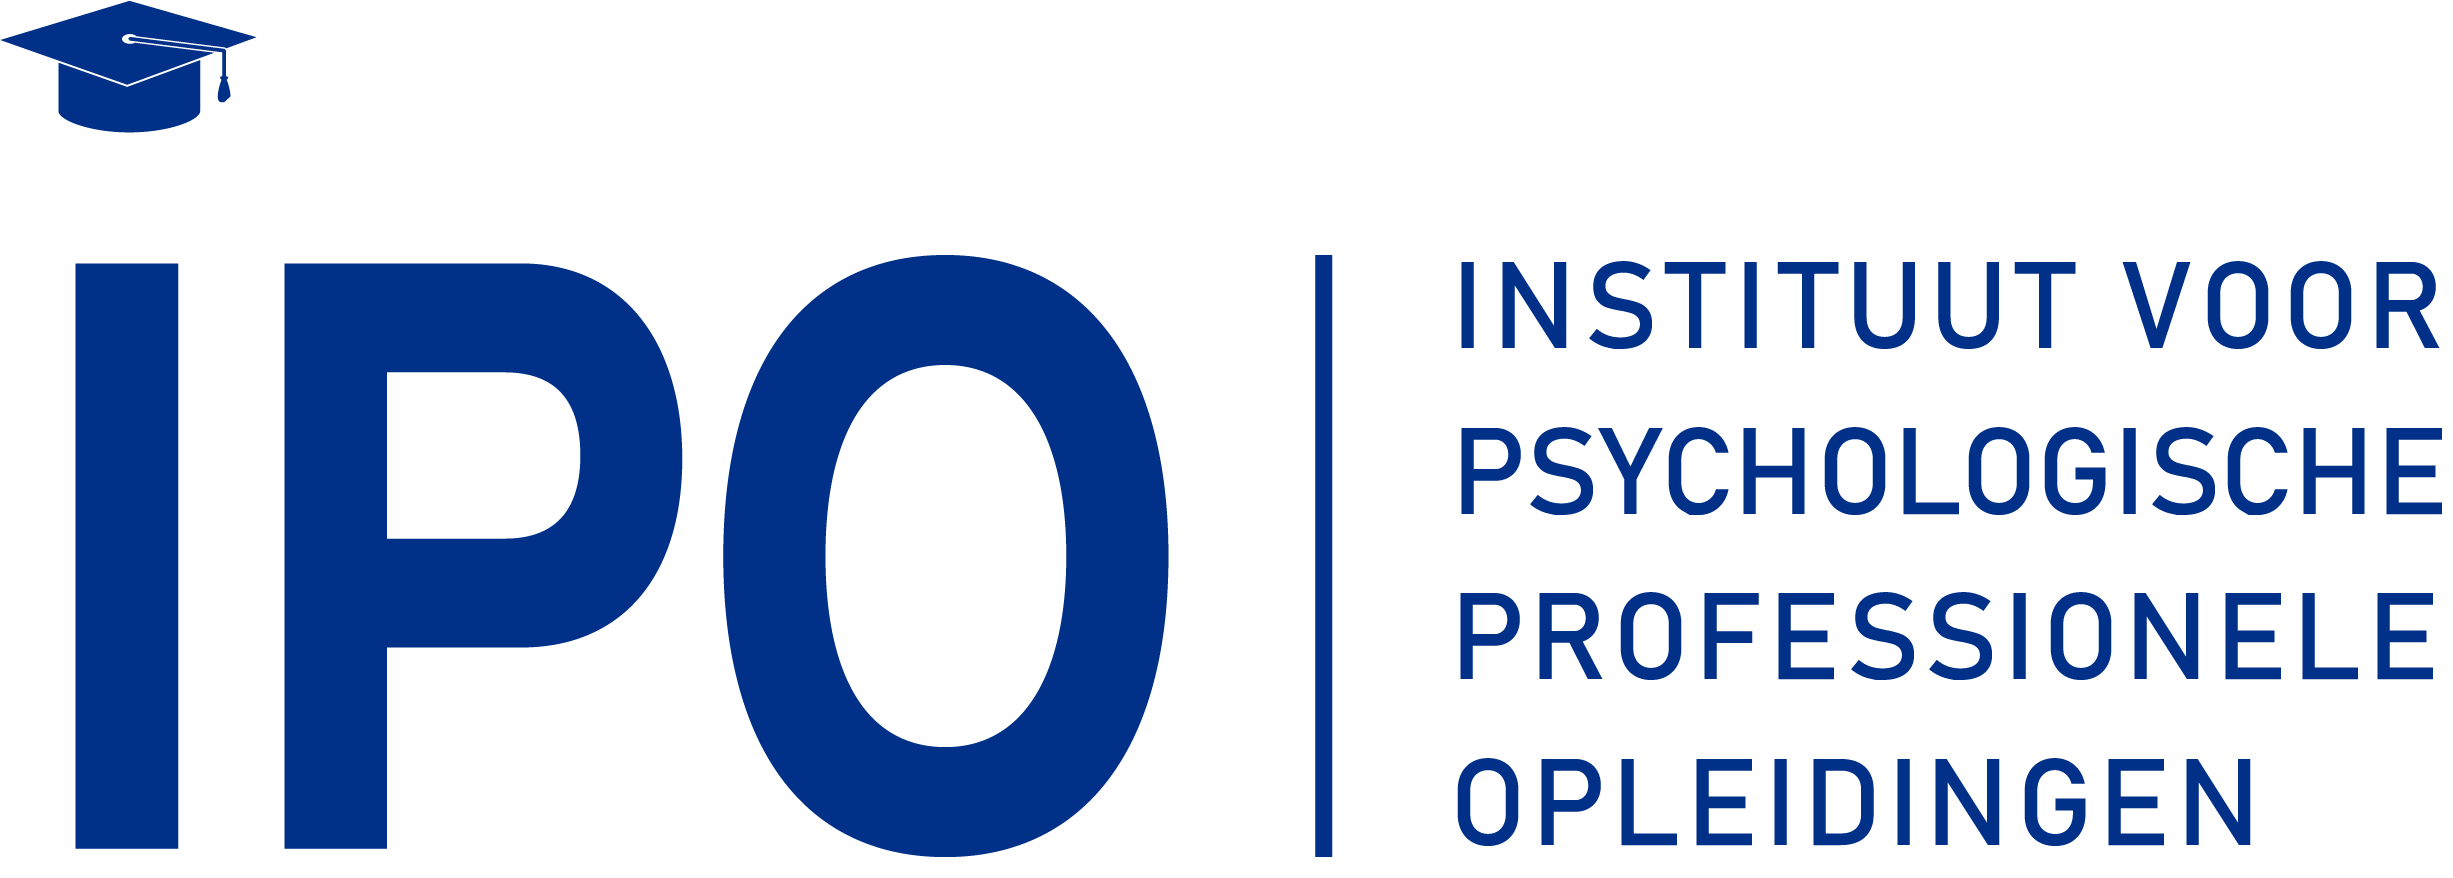 IPO, Instituut voor Psychologische Professionele Opleidingen